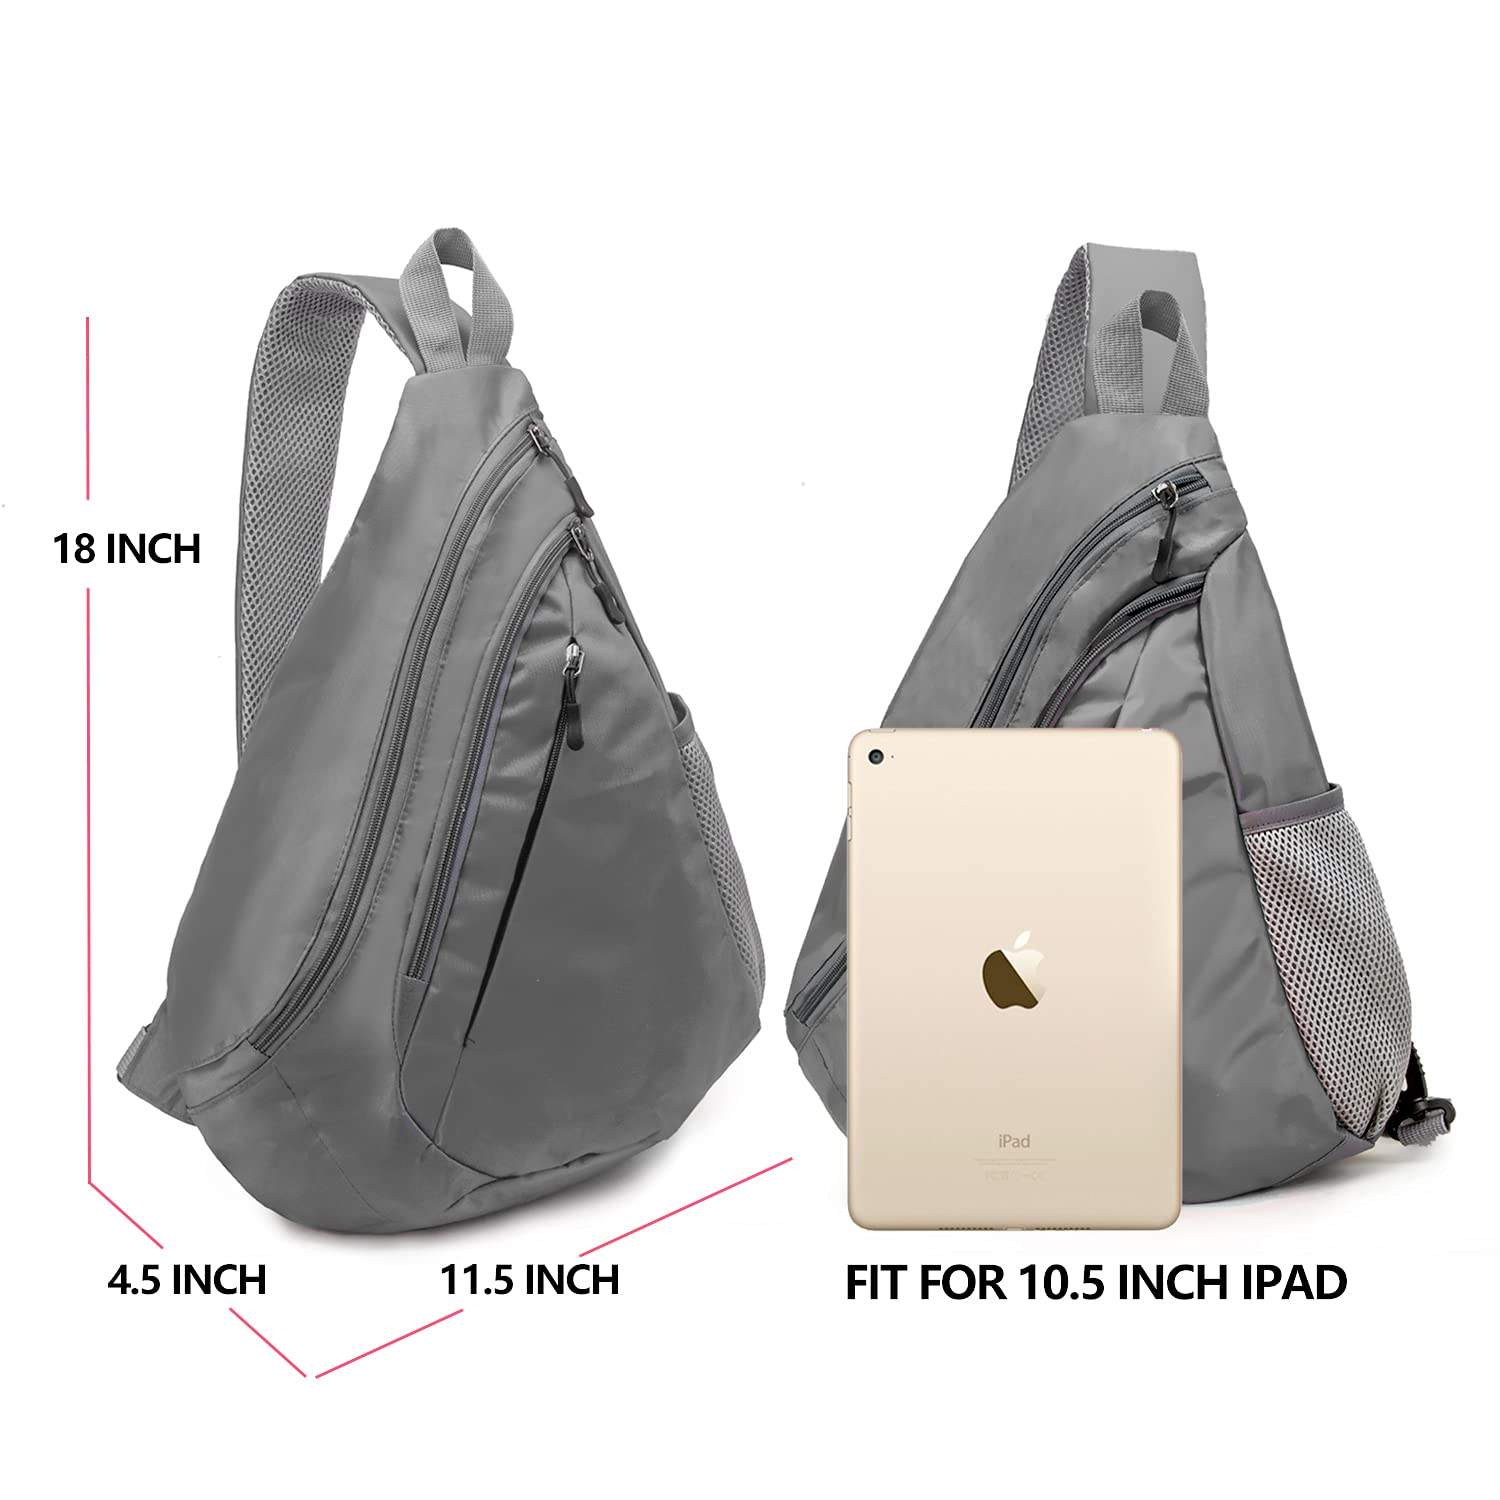 Wasserdichte Custom Sling Bag Leichte Umhängetasche Travel Hike Rucksack für Damen Herren Kind grau